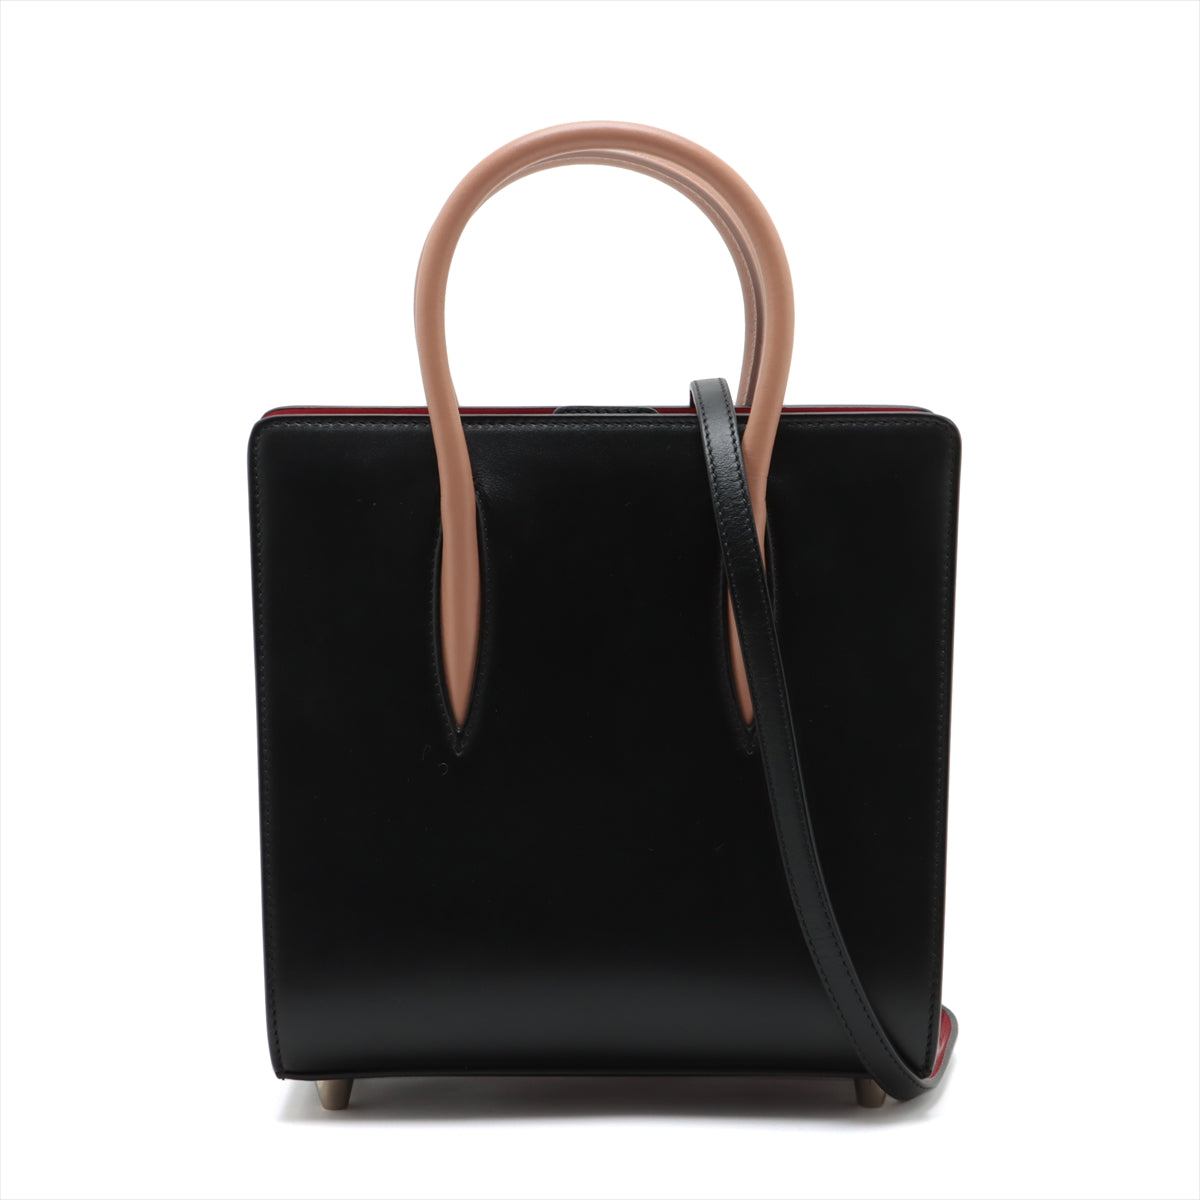 Christian Louboutin Paloma Small Leather 2way handbag Black